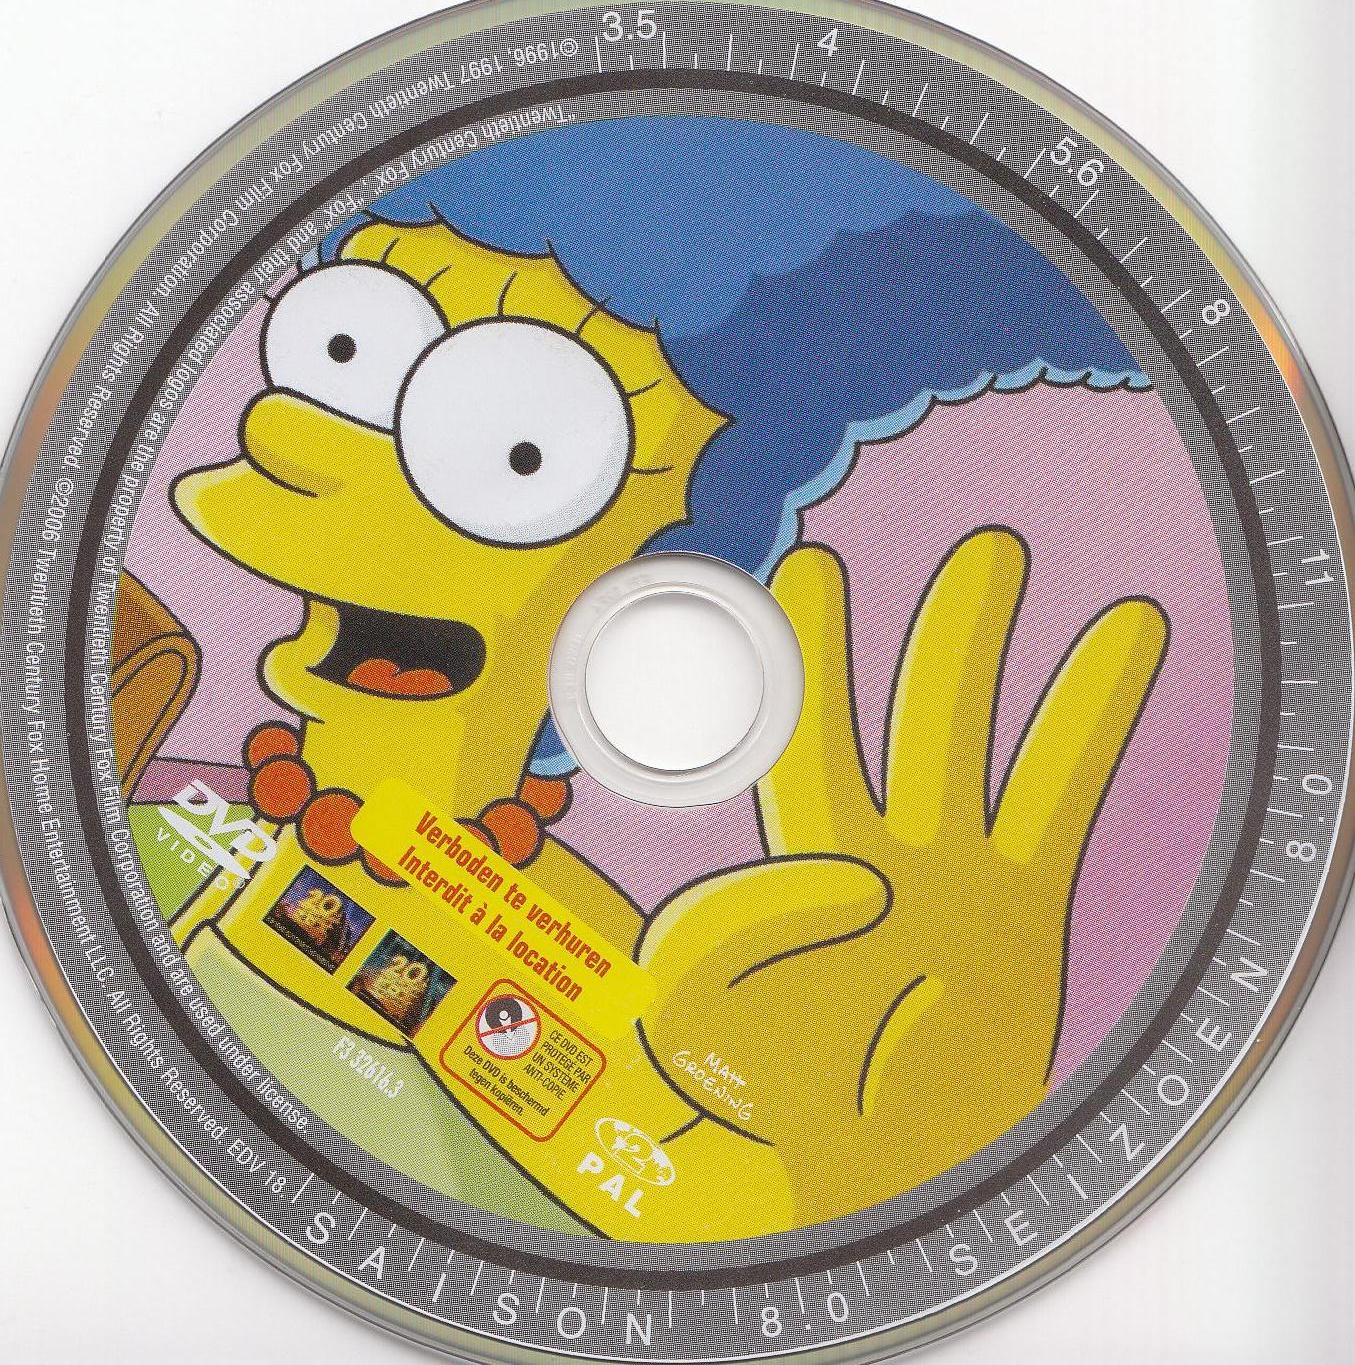 Les Simpson Saison 8 vol 3